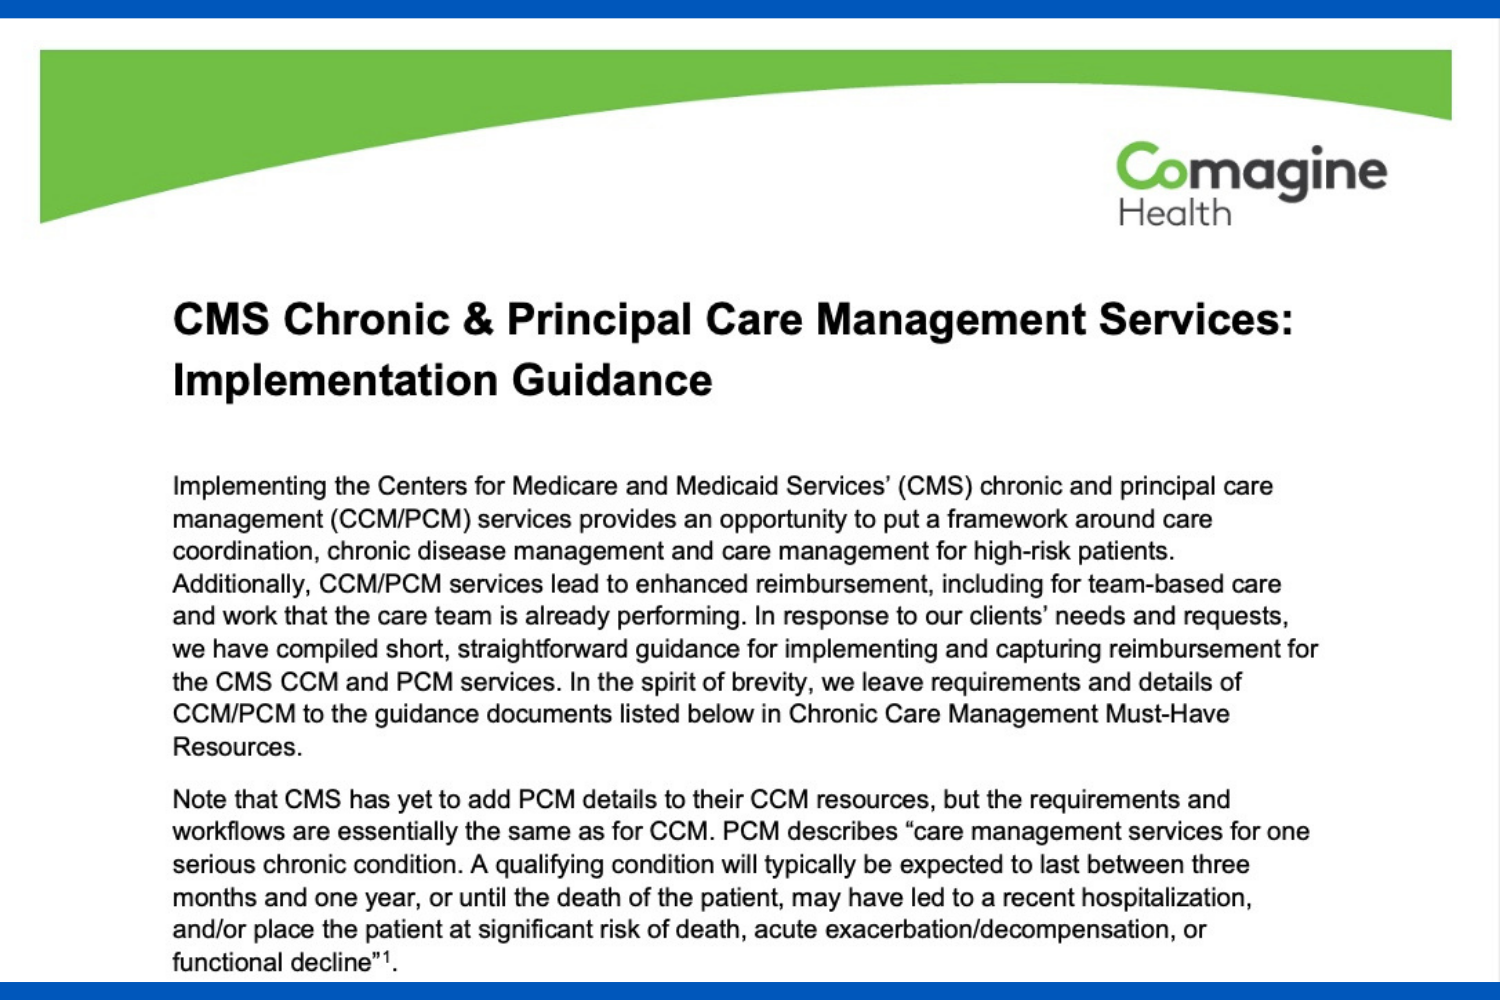 Comagine Health Chronic & Principle Care Management Implementation